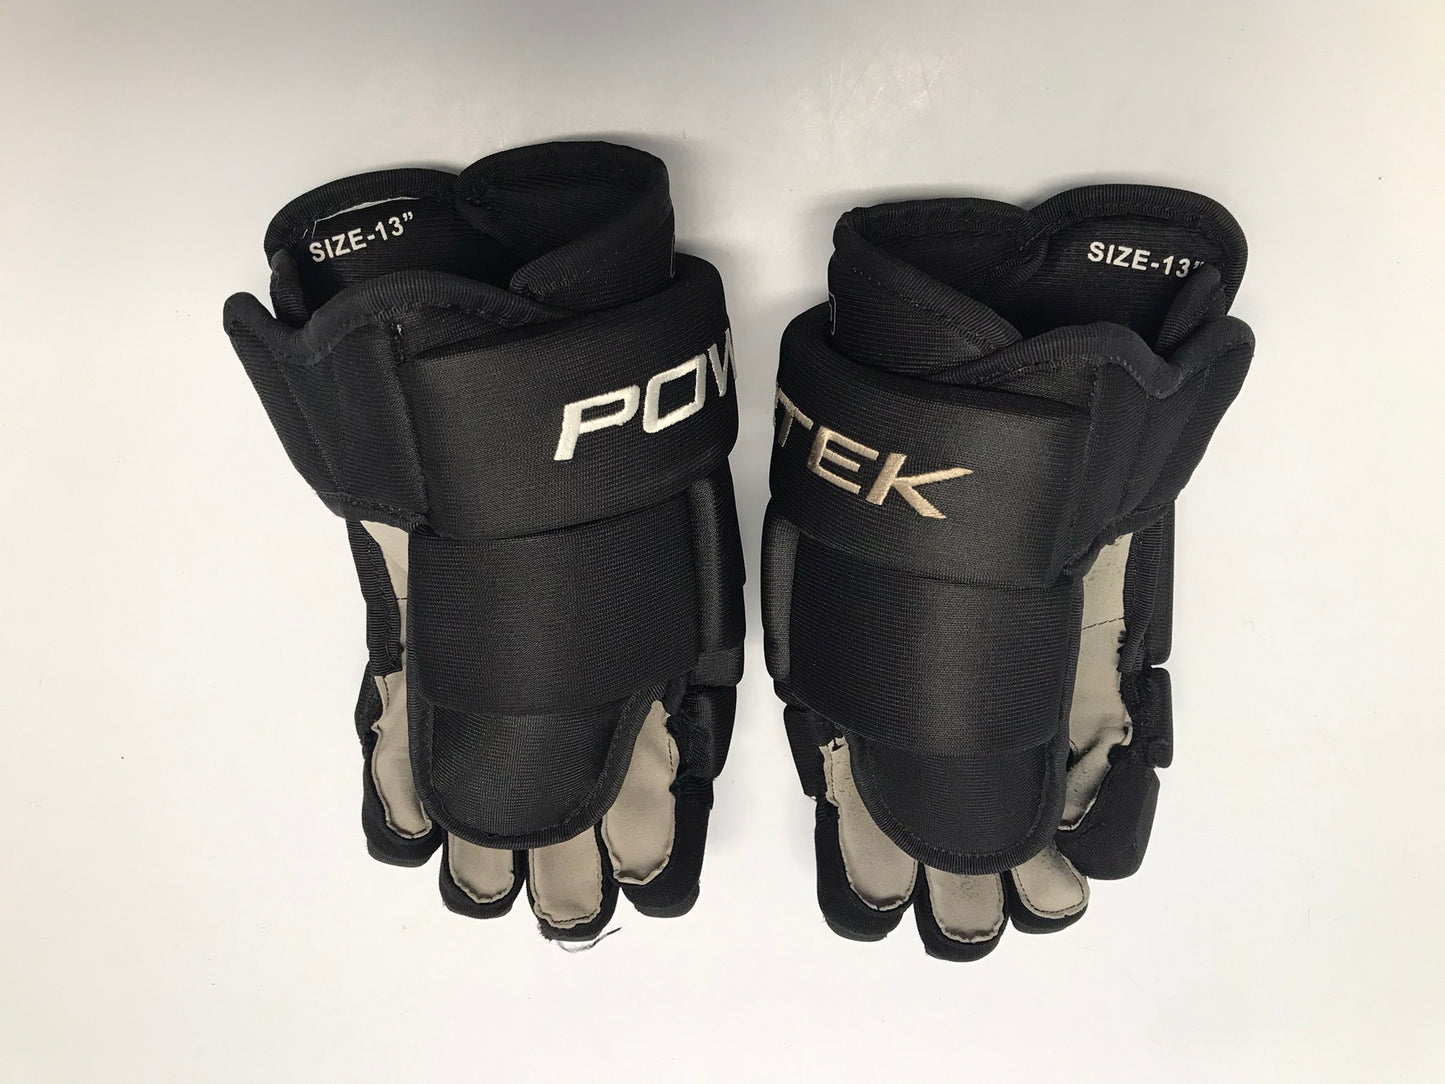 Hockey Gloves Men's or Junior Size 13 inch Power Tek Black Like New